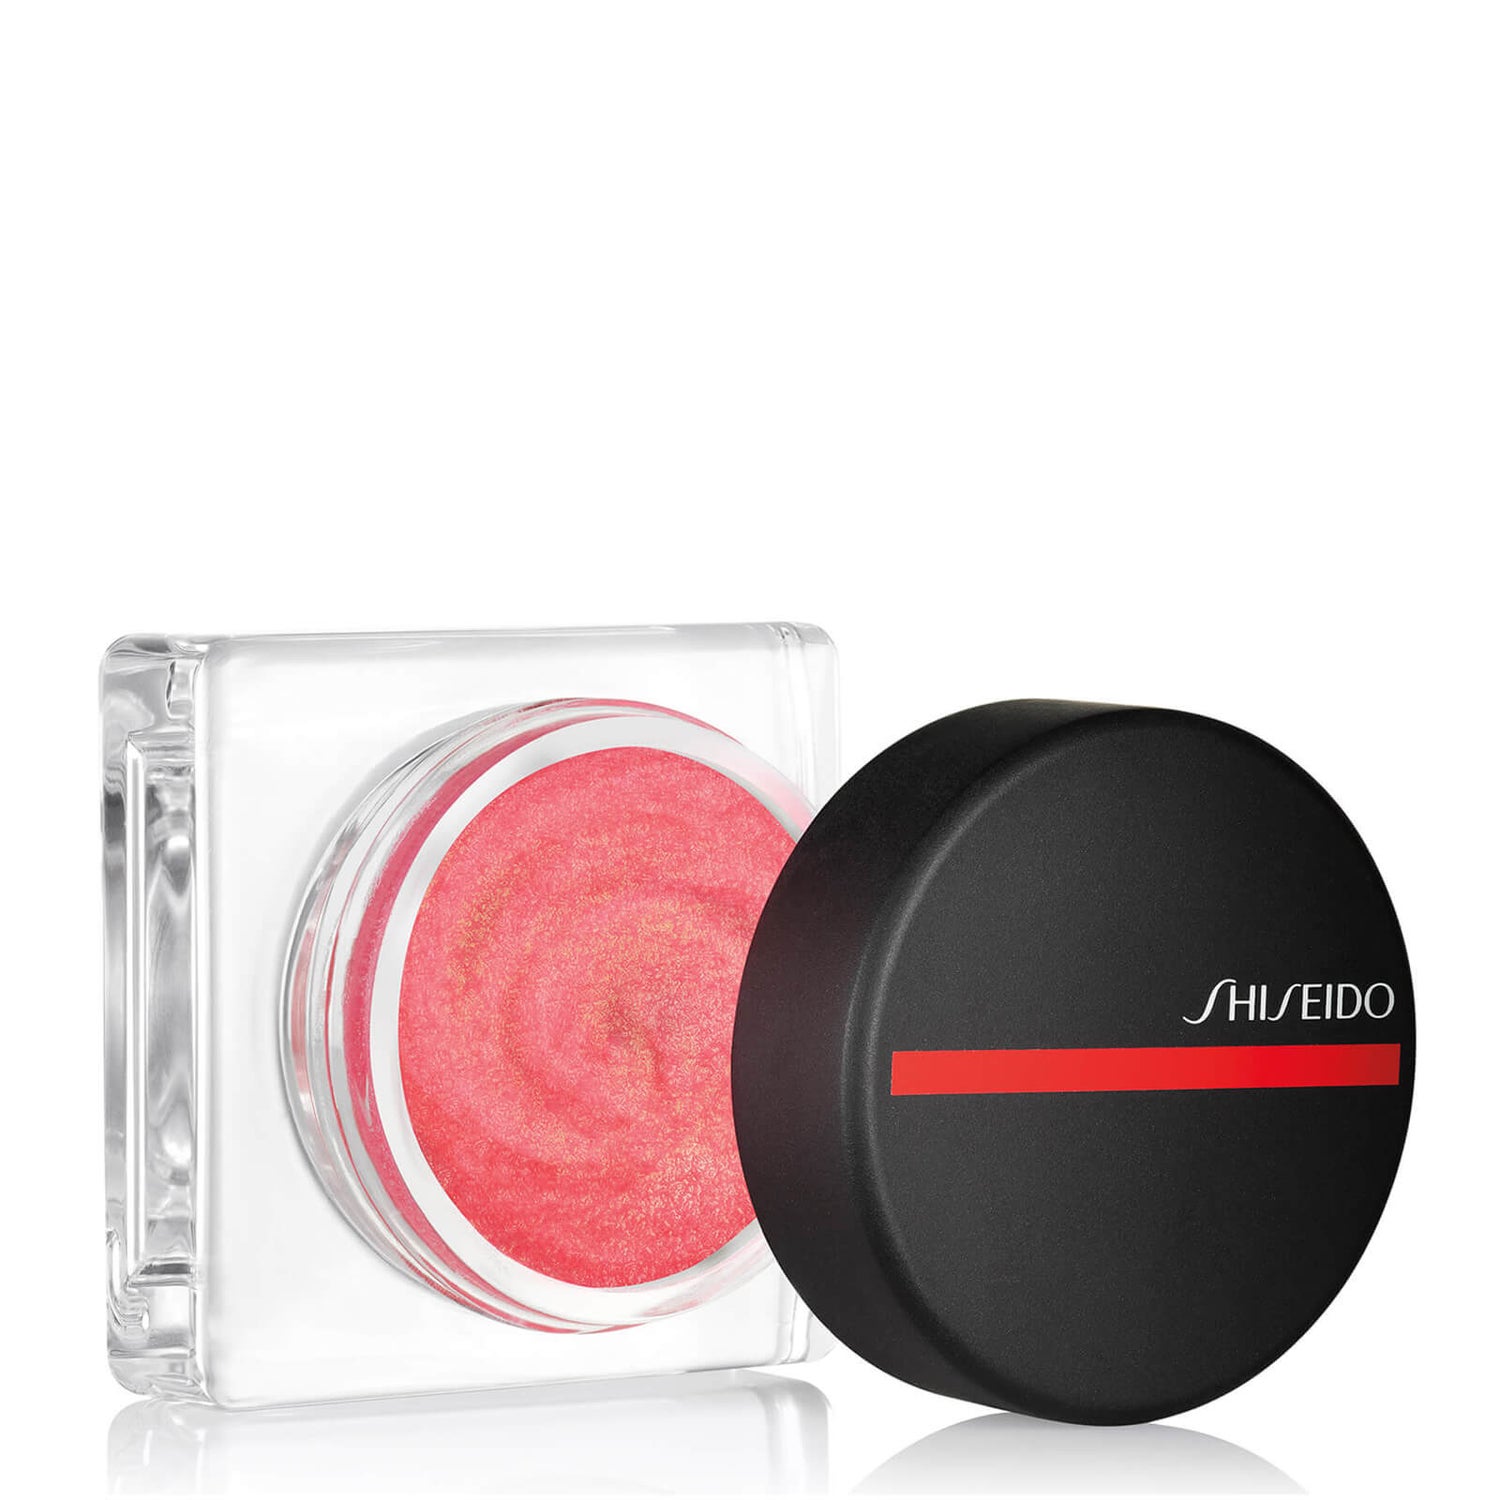 Shiseido Minimalist Whipped Powder Blush (forskellige nuancer)